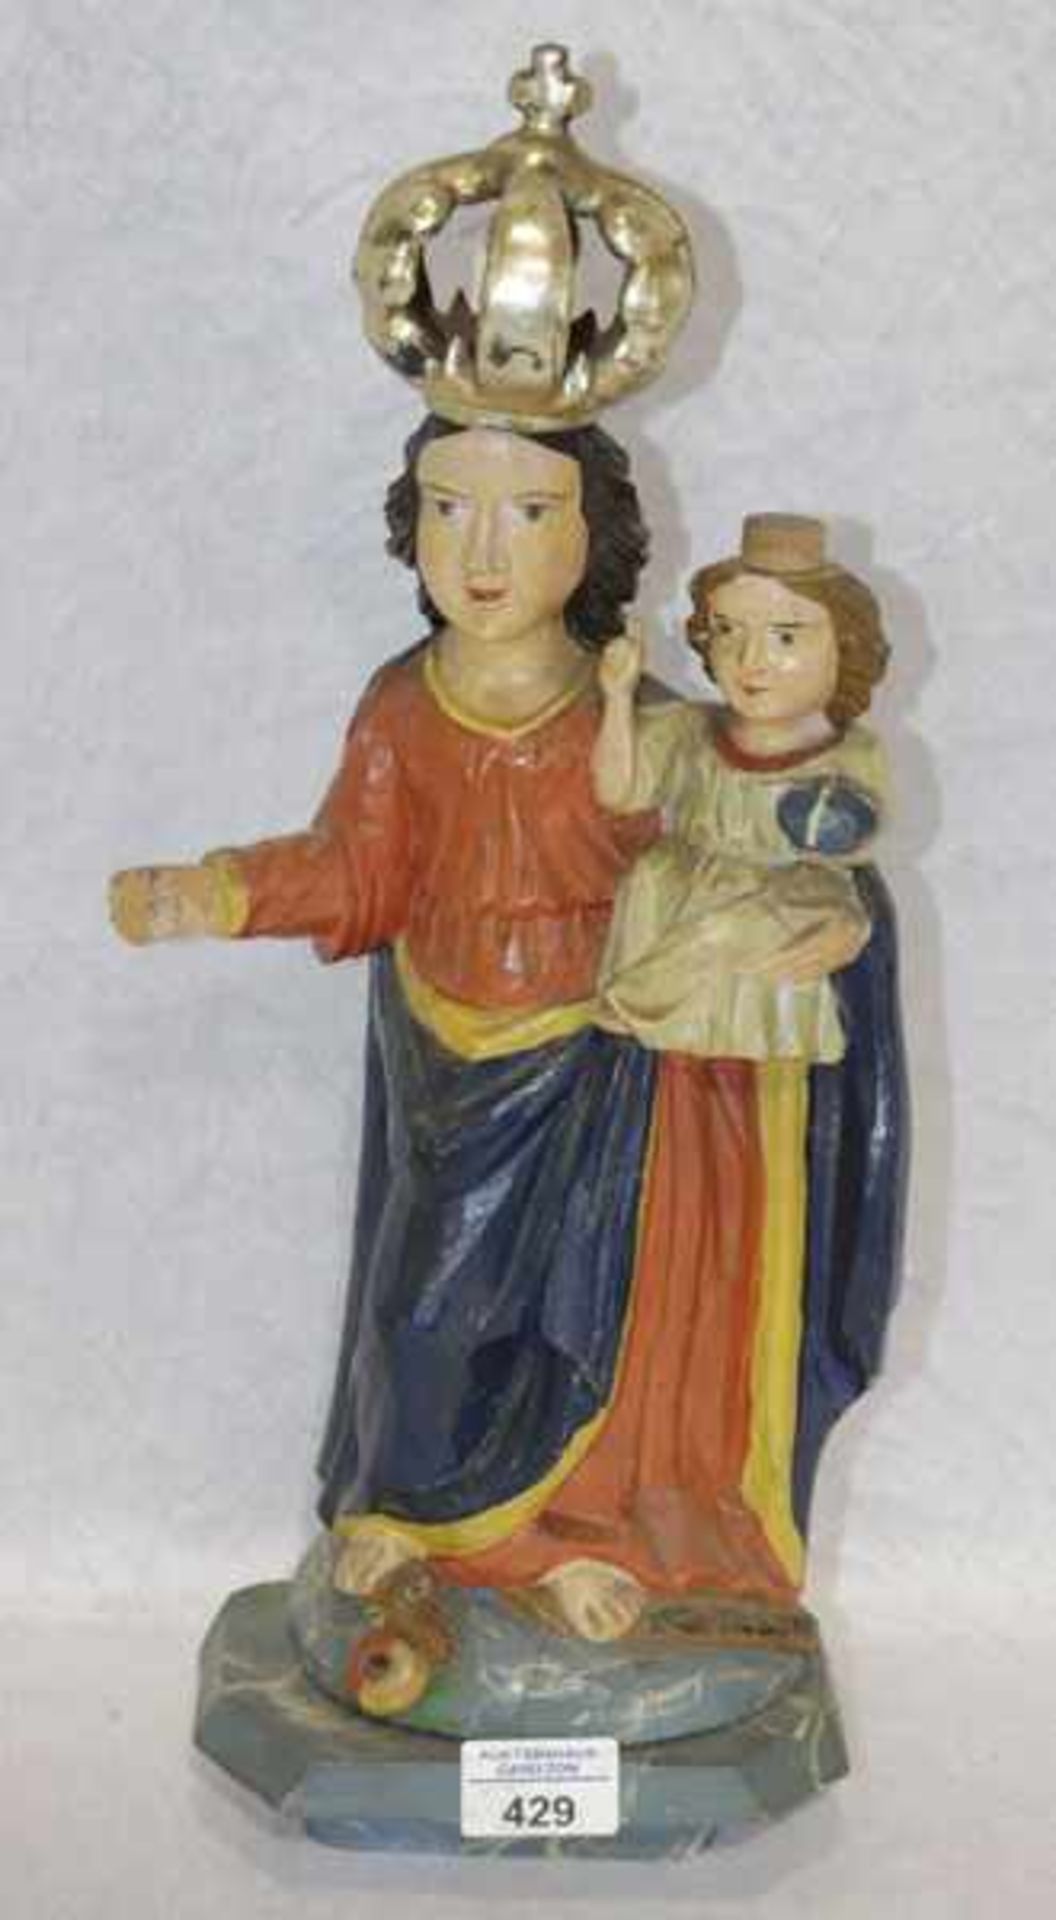 Böhmische Holzfigurenskulptur 'Maria mit Kind', auf Sockel, farbig gefaßt, teils beschädigt, eine